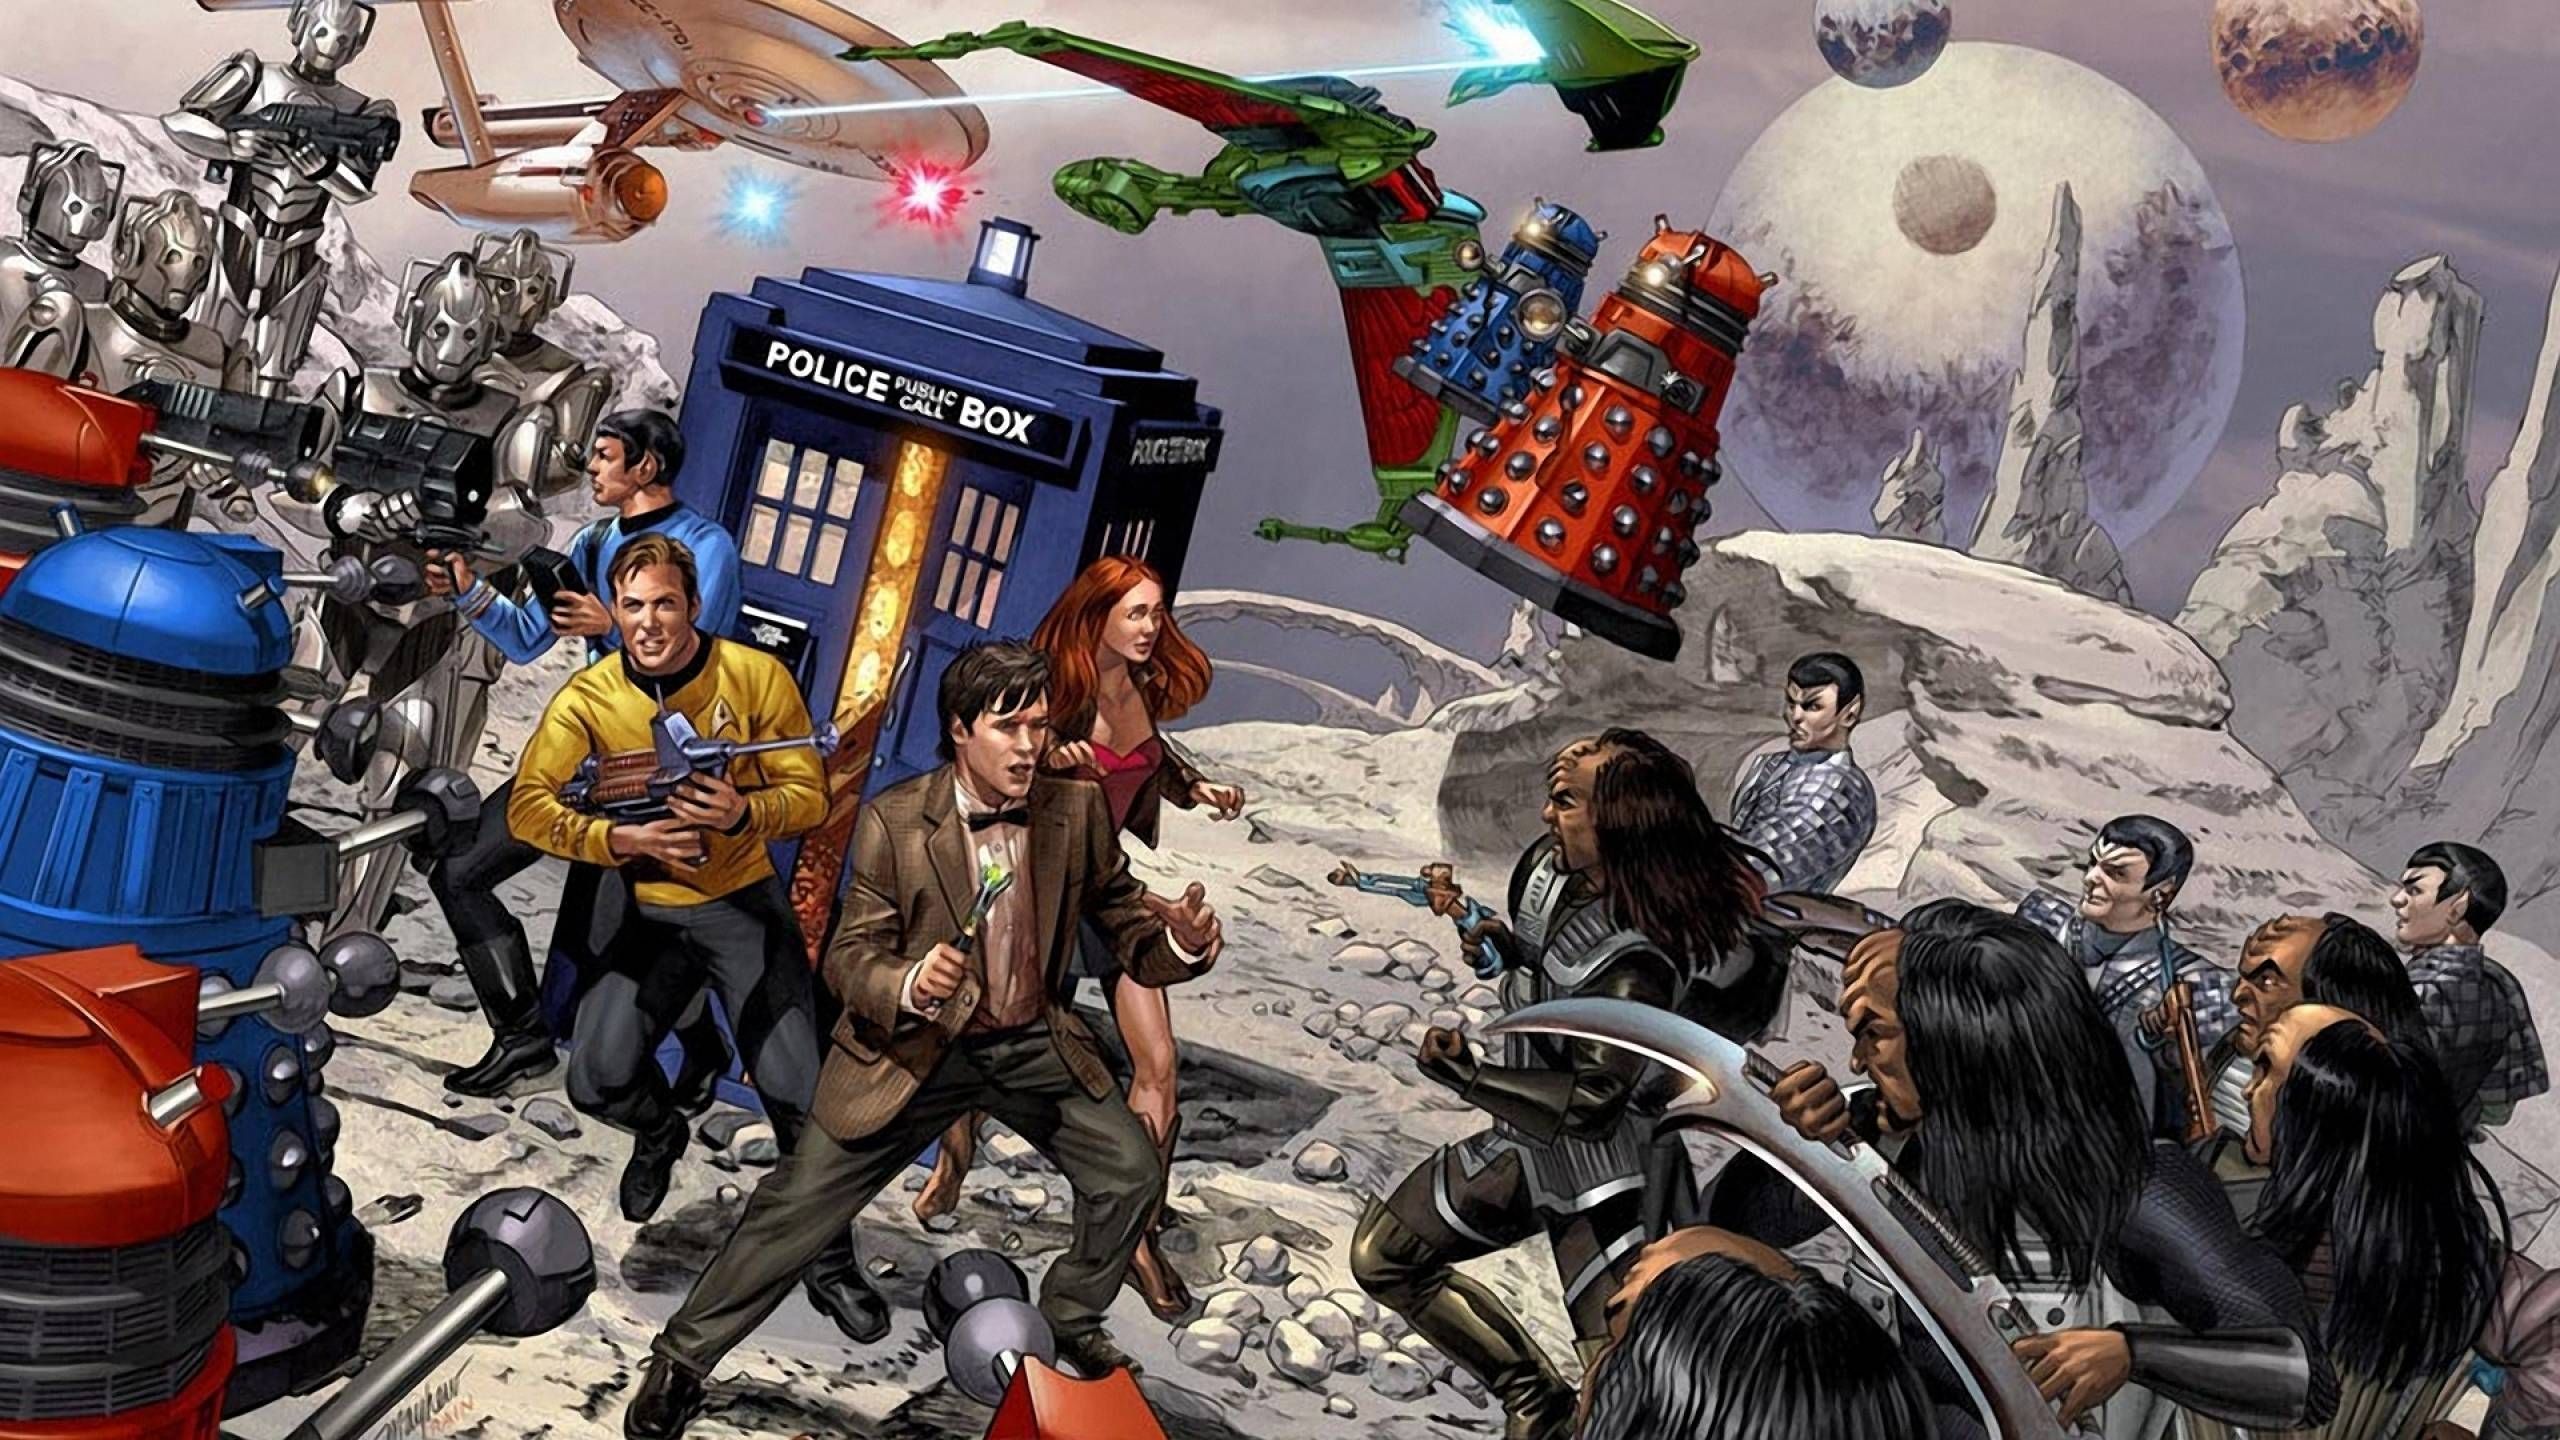 Doctor Who and Star Trek Wallpaper. Star trek wallpaper, Star